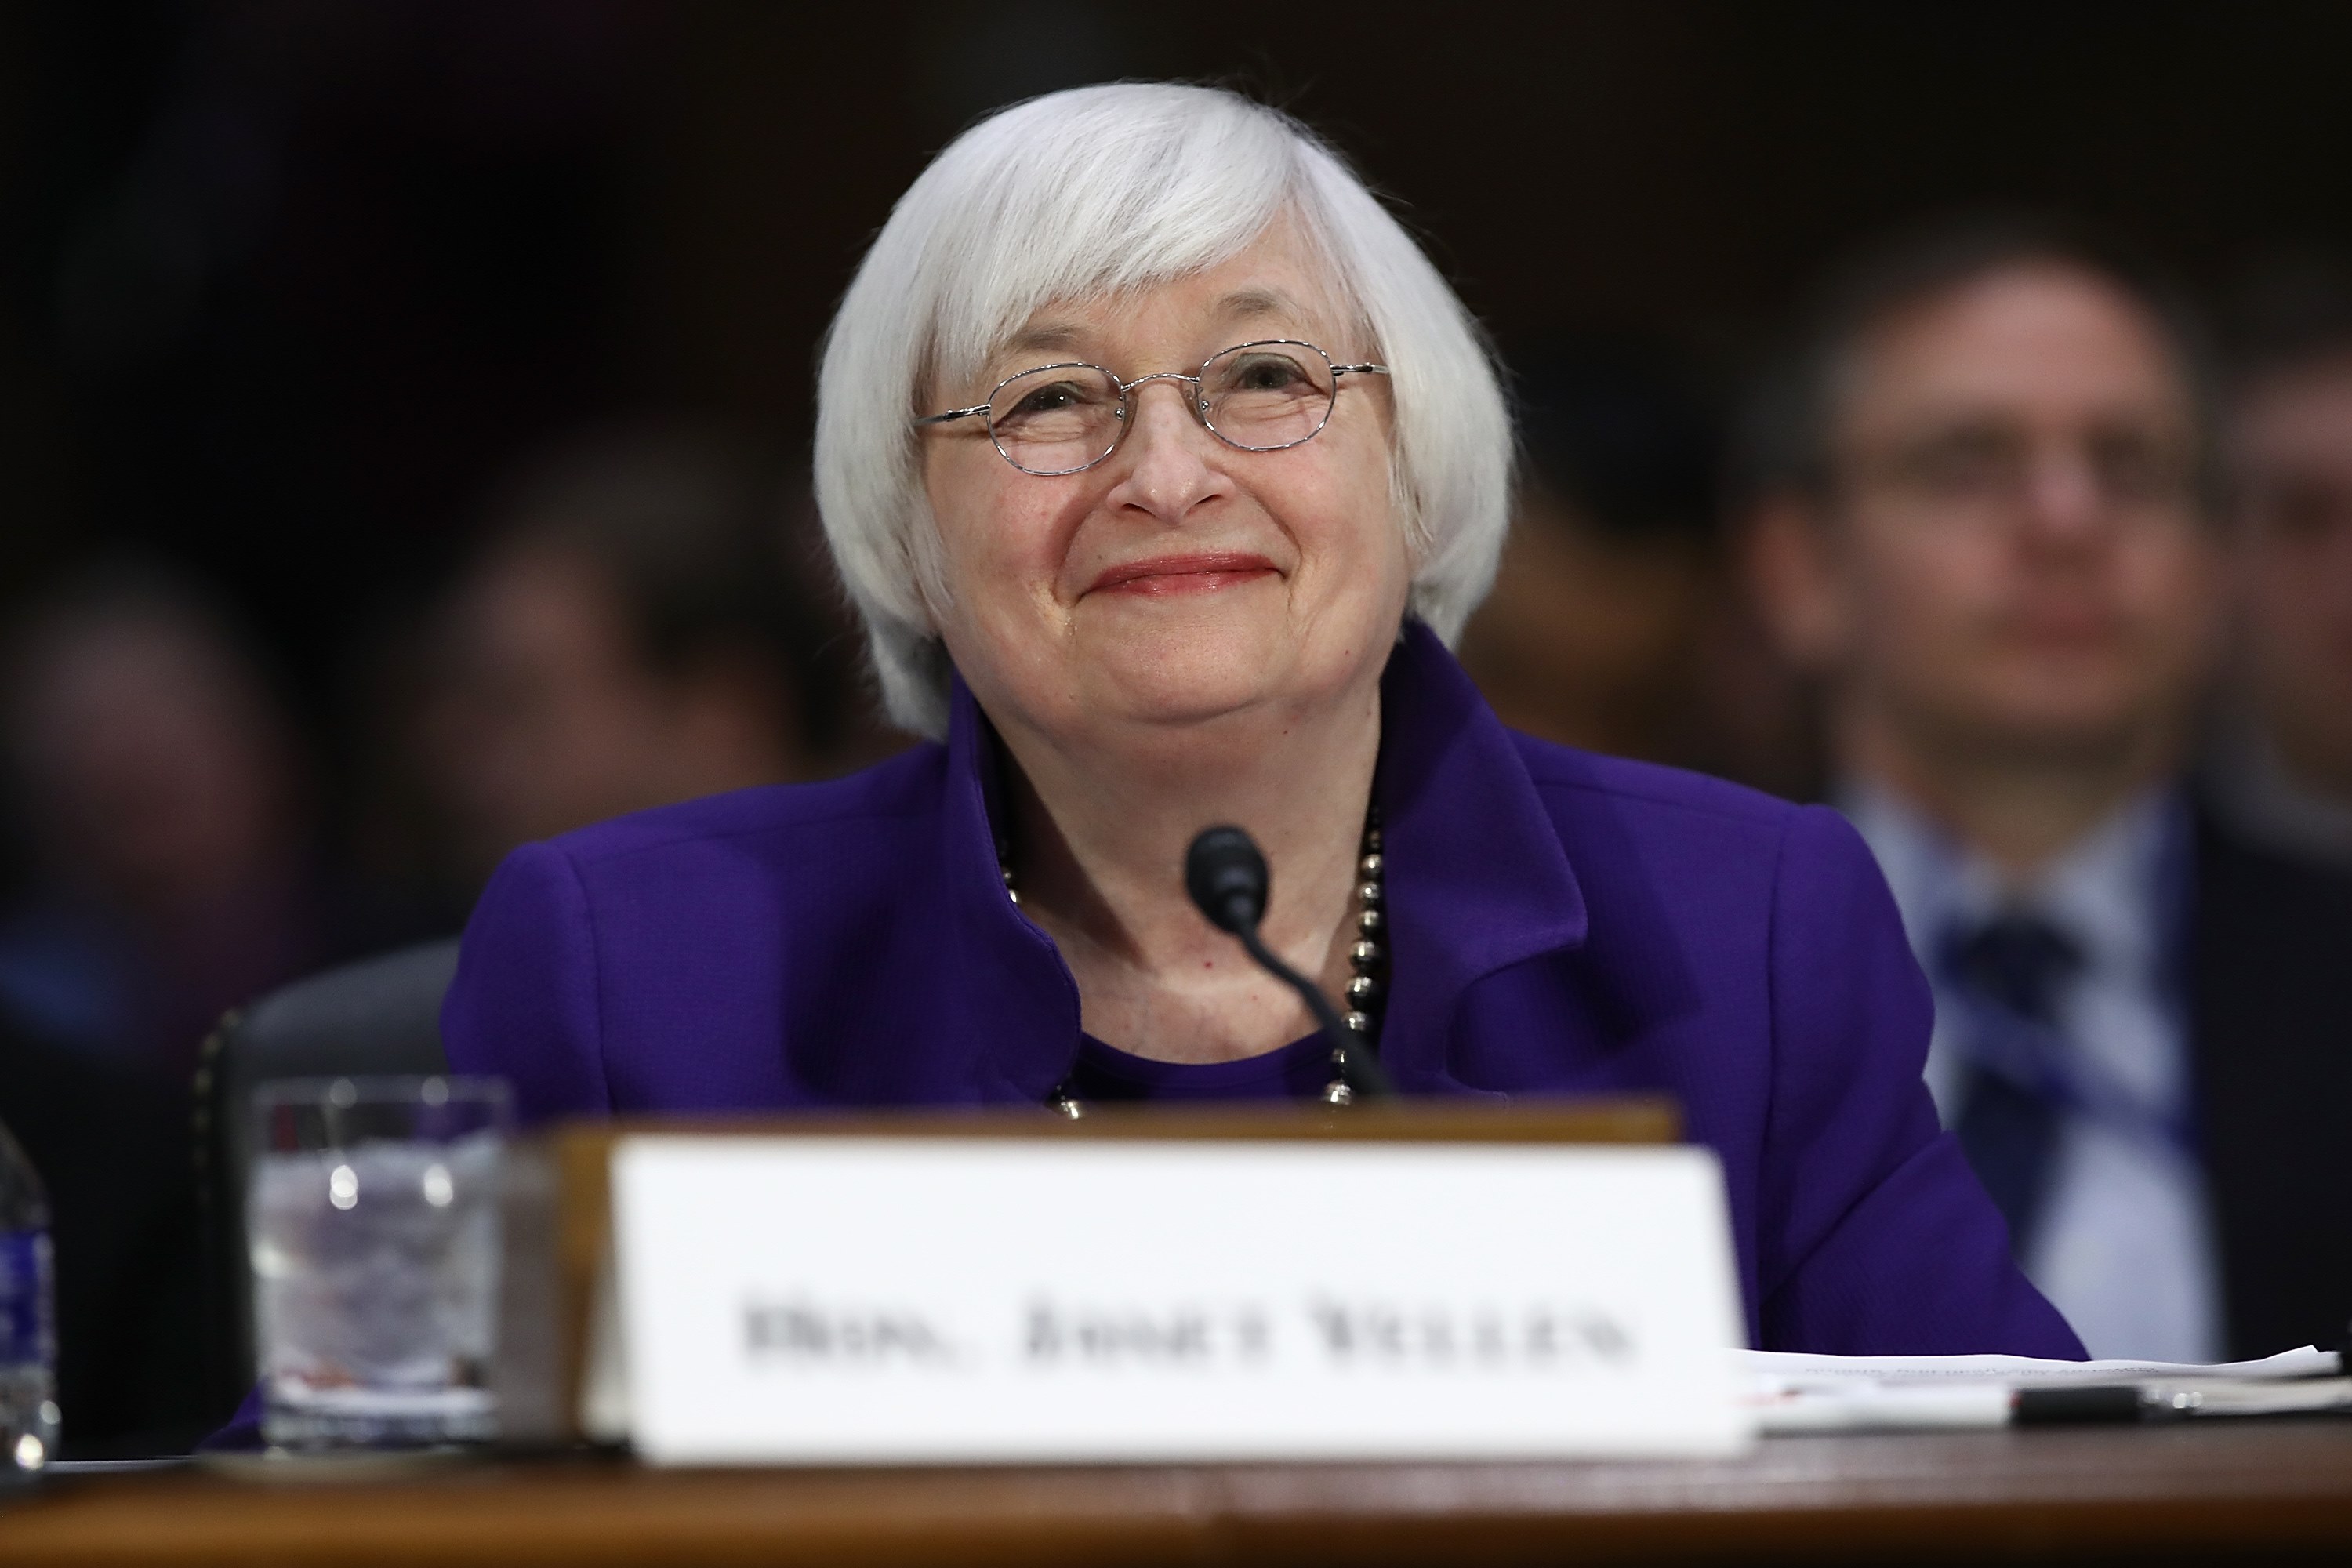 La presidente de la Reserva Federal, Janet Yellen (Getty Images)